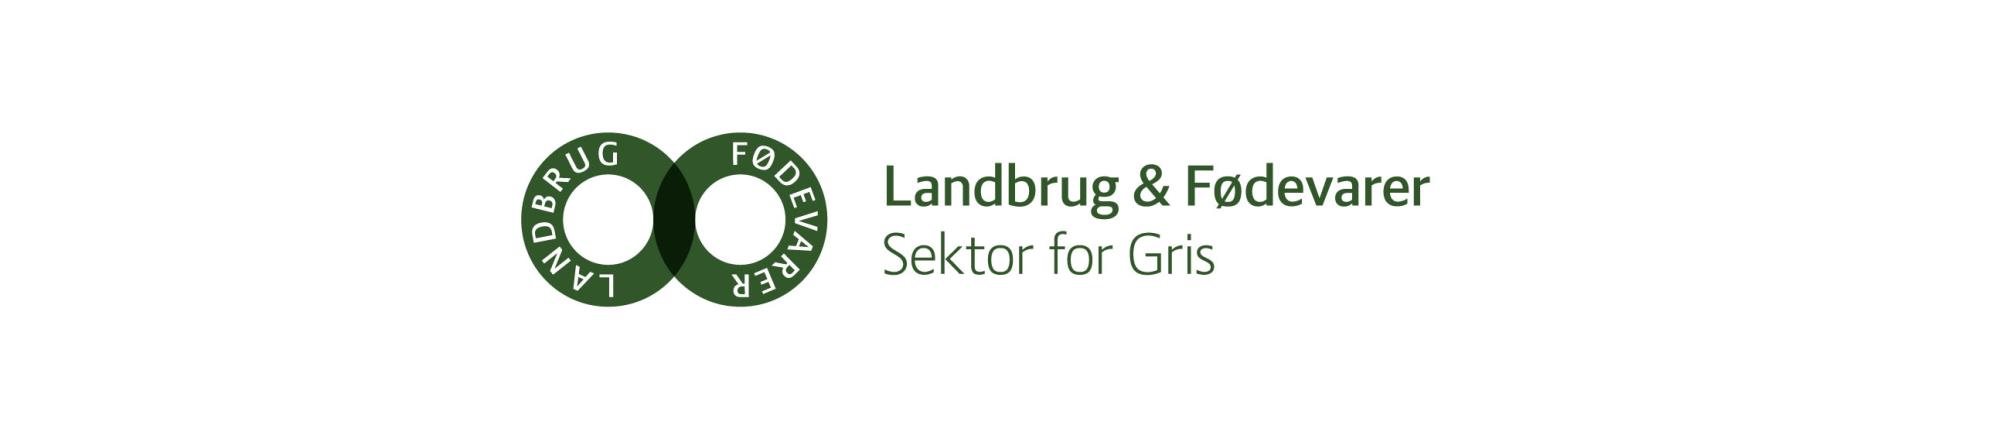 Landbrug & Fødevarer Sektor for Gris logo